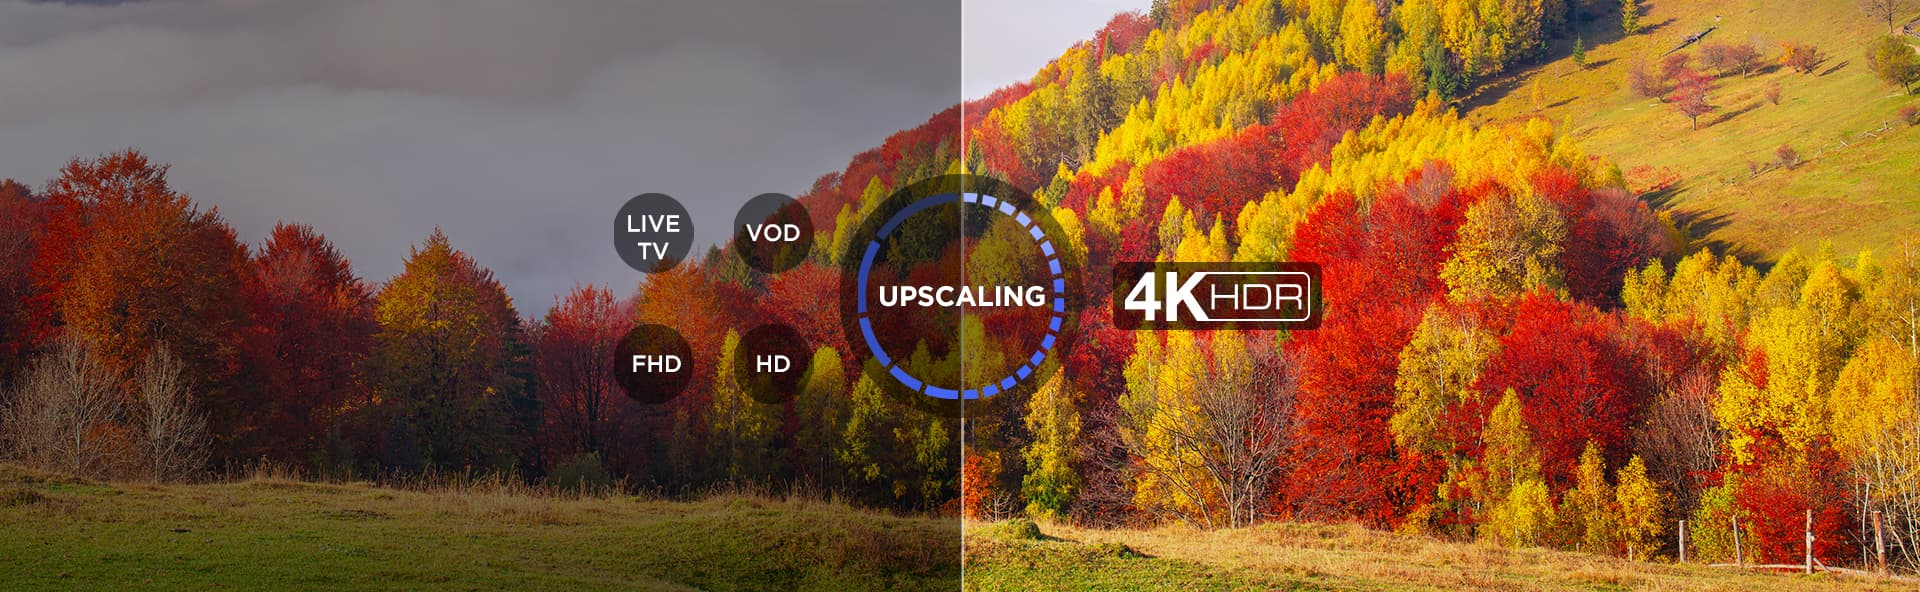 upscalling 4K UHD TV's